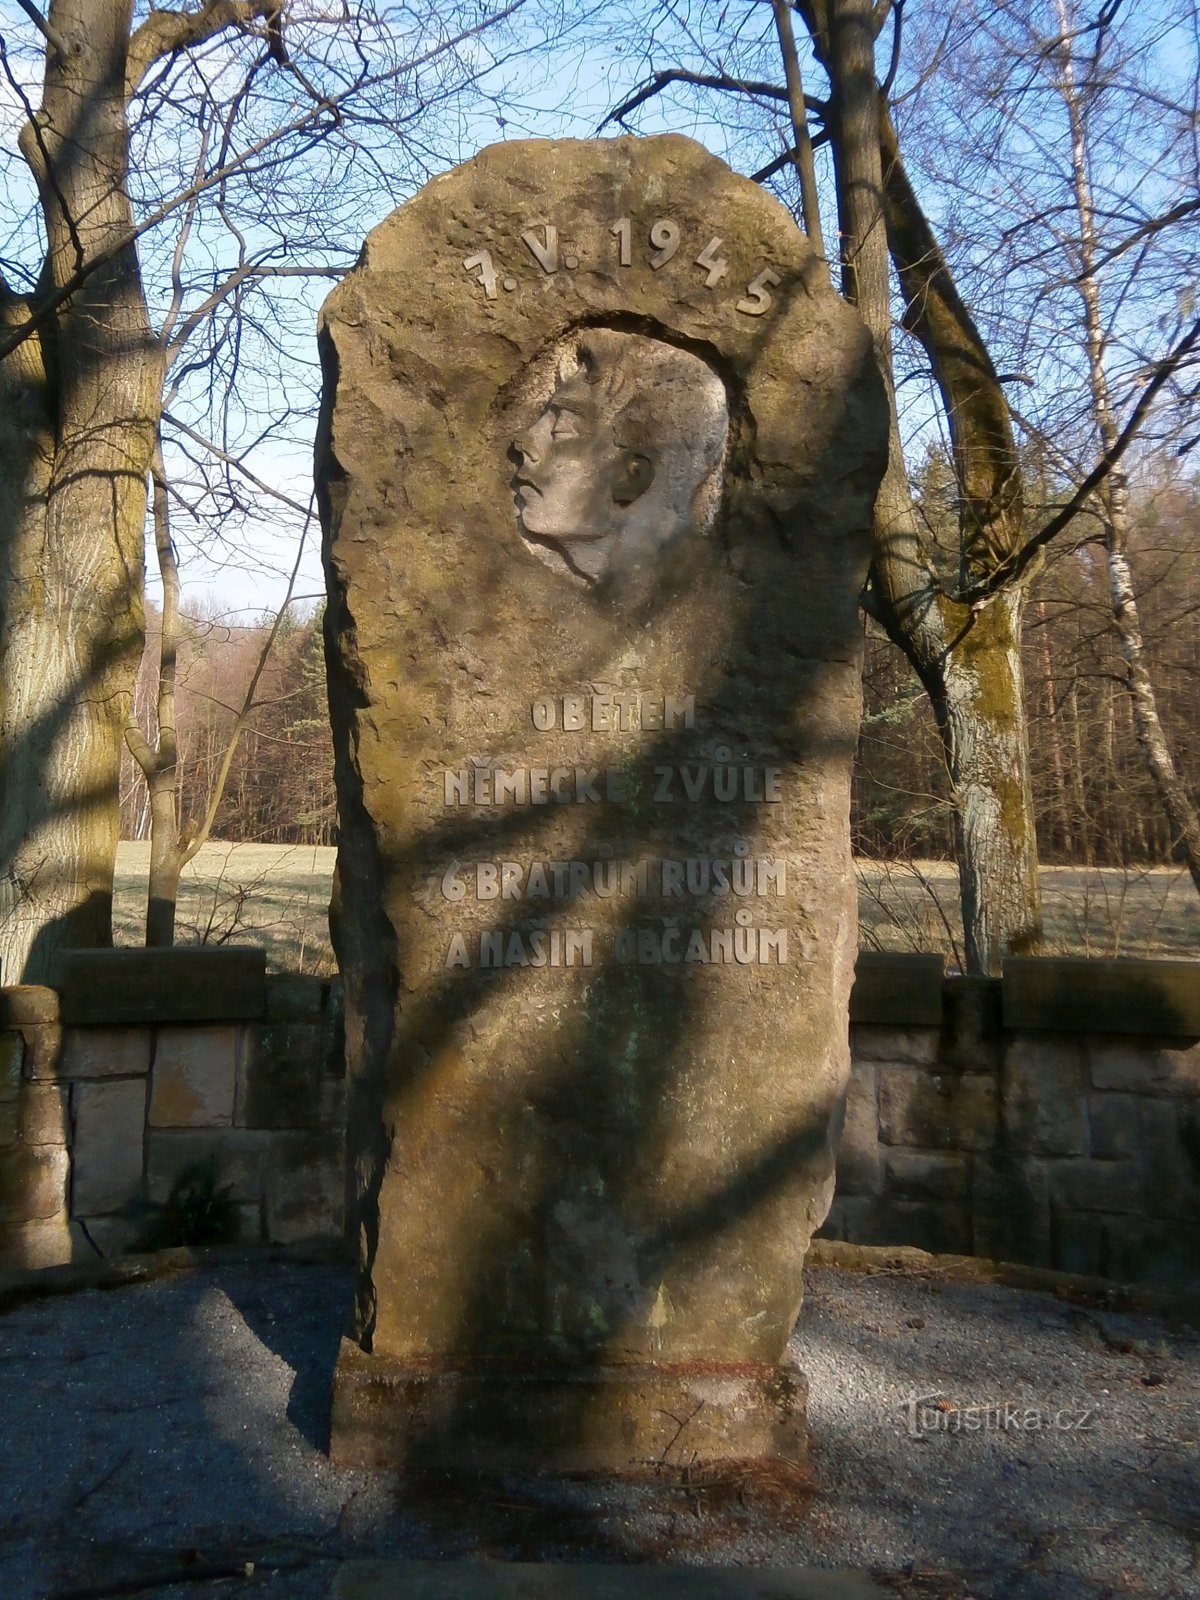 Đài tưởng niệm các nạn nhân của Thế chiến II (Vysoká nad Labem, 2/24.3.2017/XNUMX)